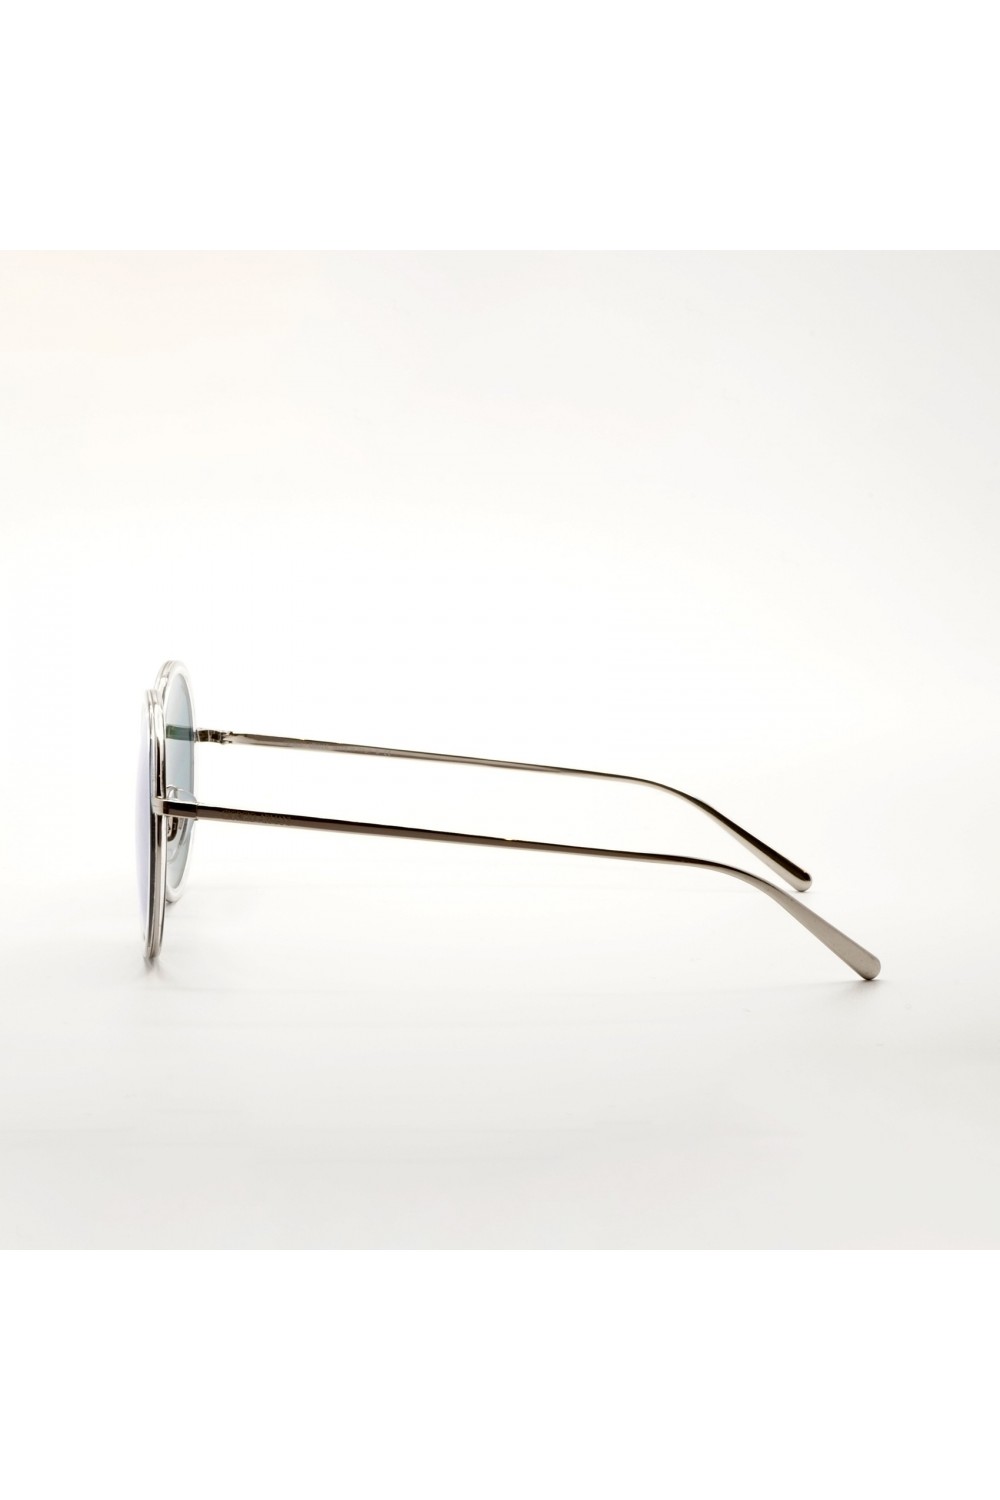 Giorgio Armani - Occhiali da sole in metallo tondi unisex silver